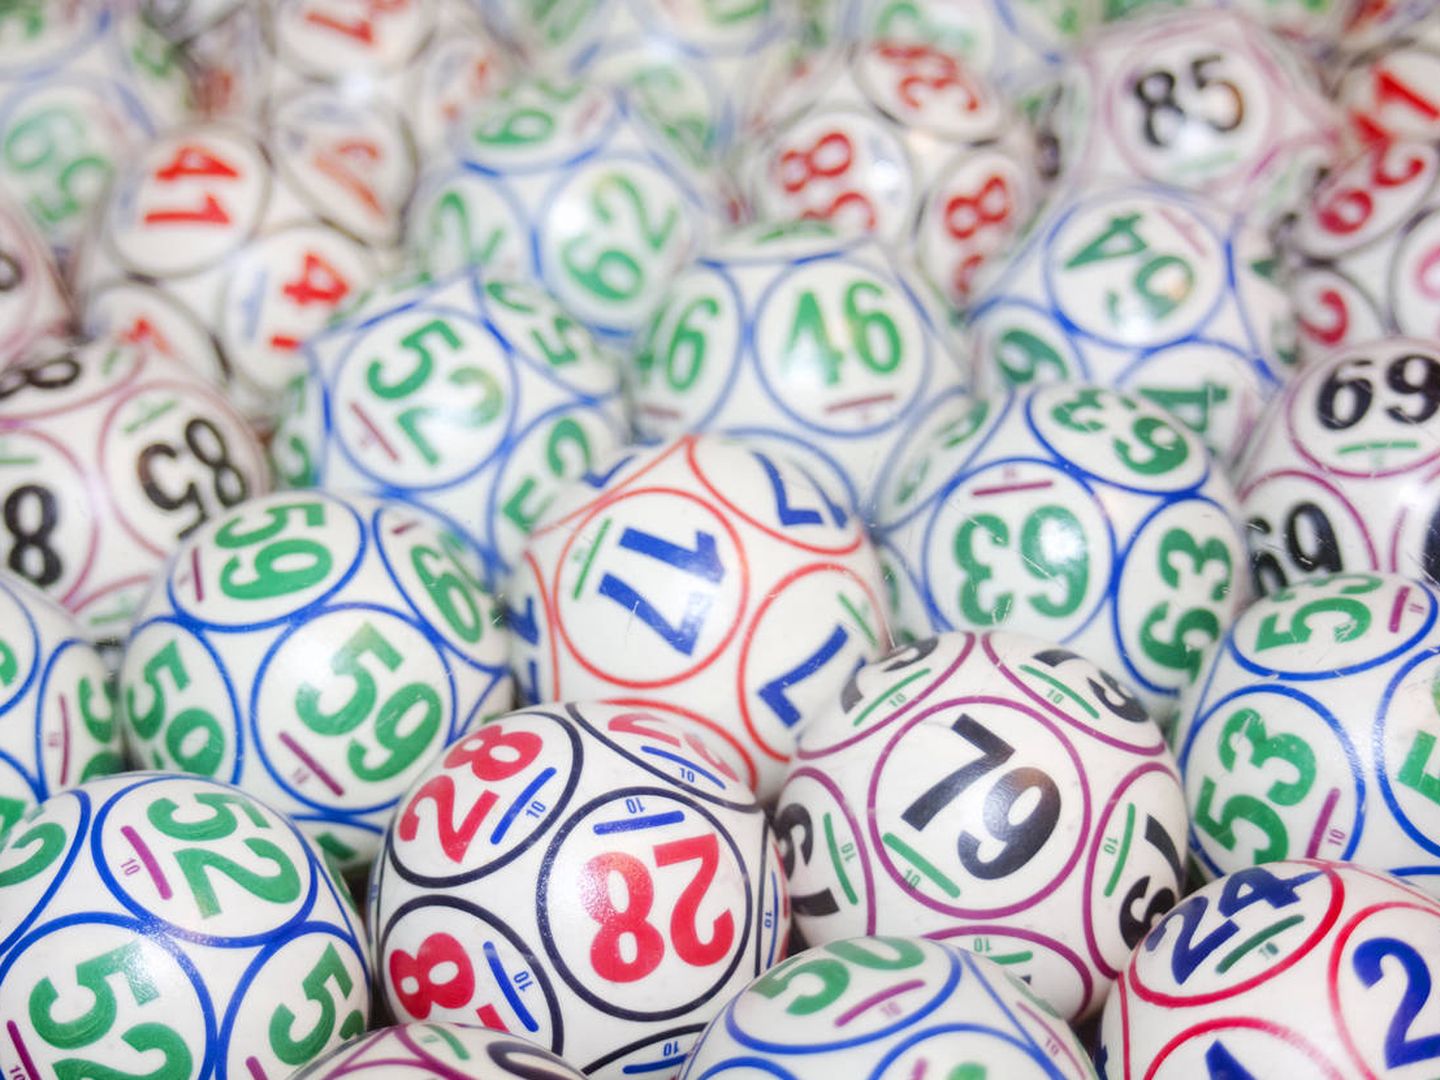 La lotería en Estados Unidos se elige por un programa de ordenador, no con bolas. (iStock)